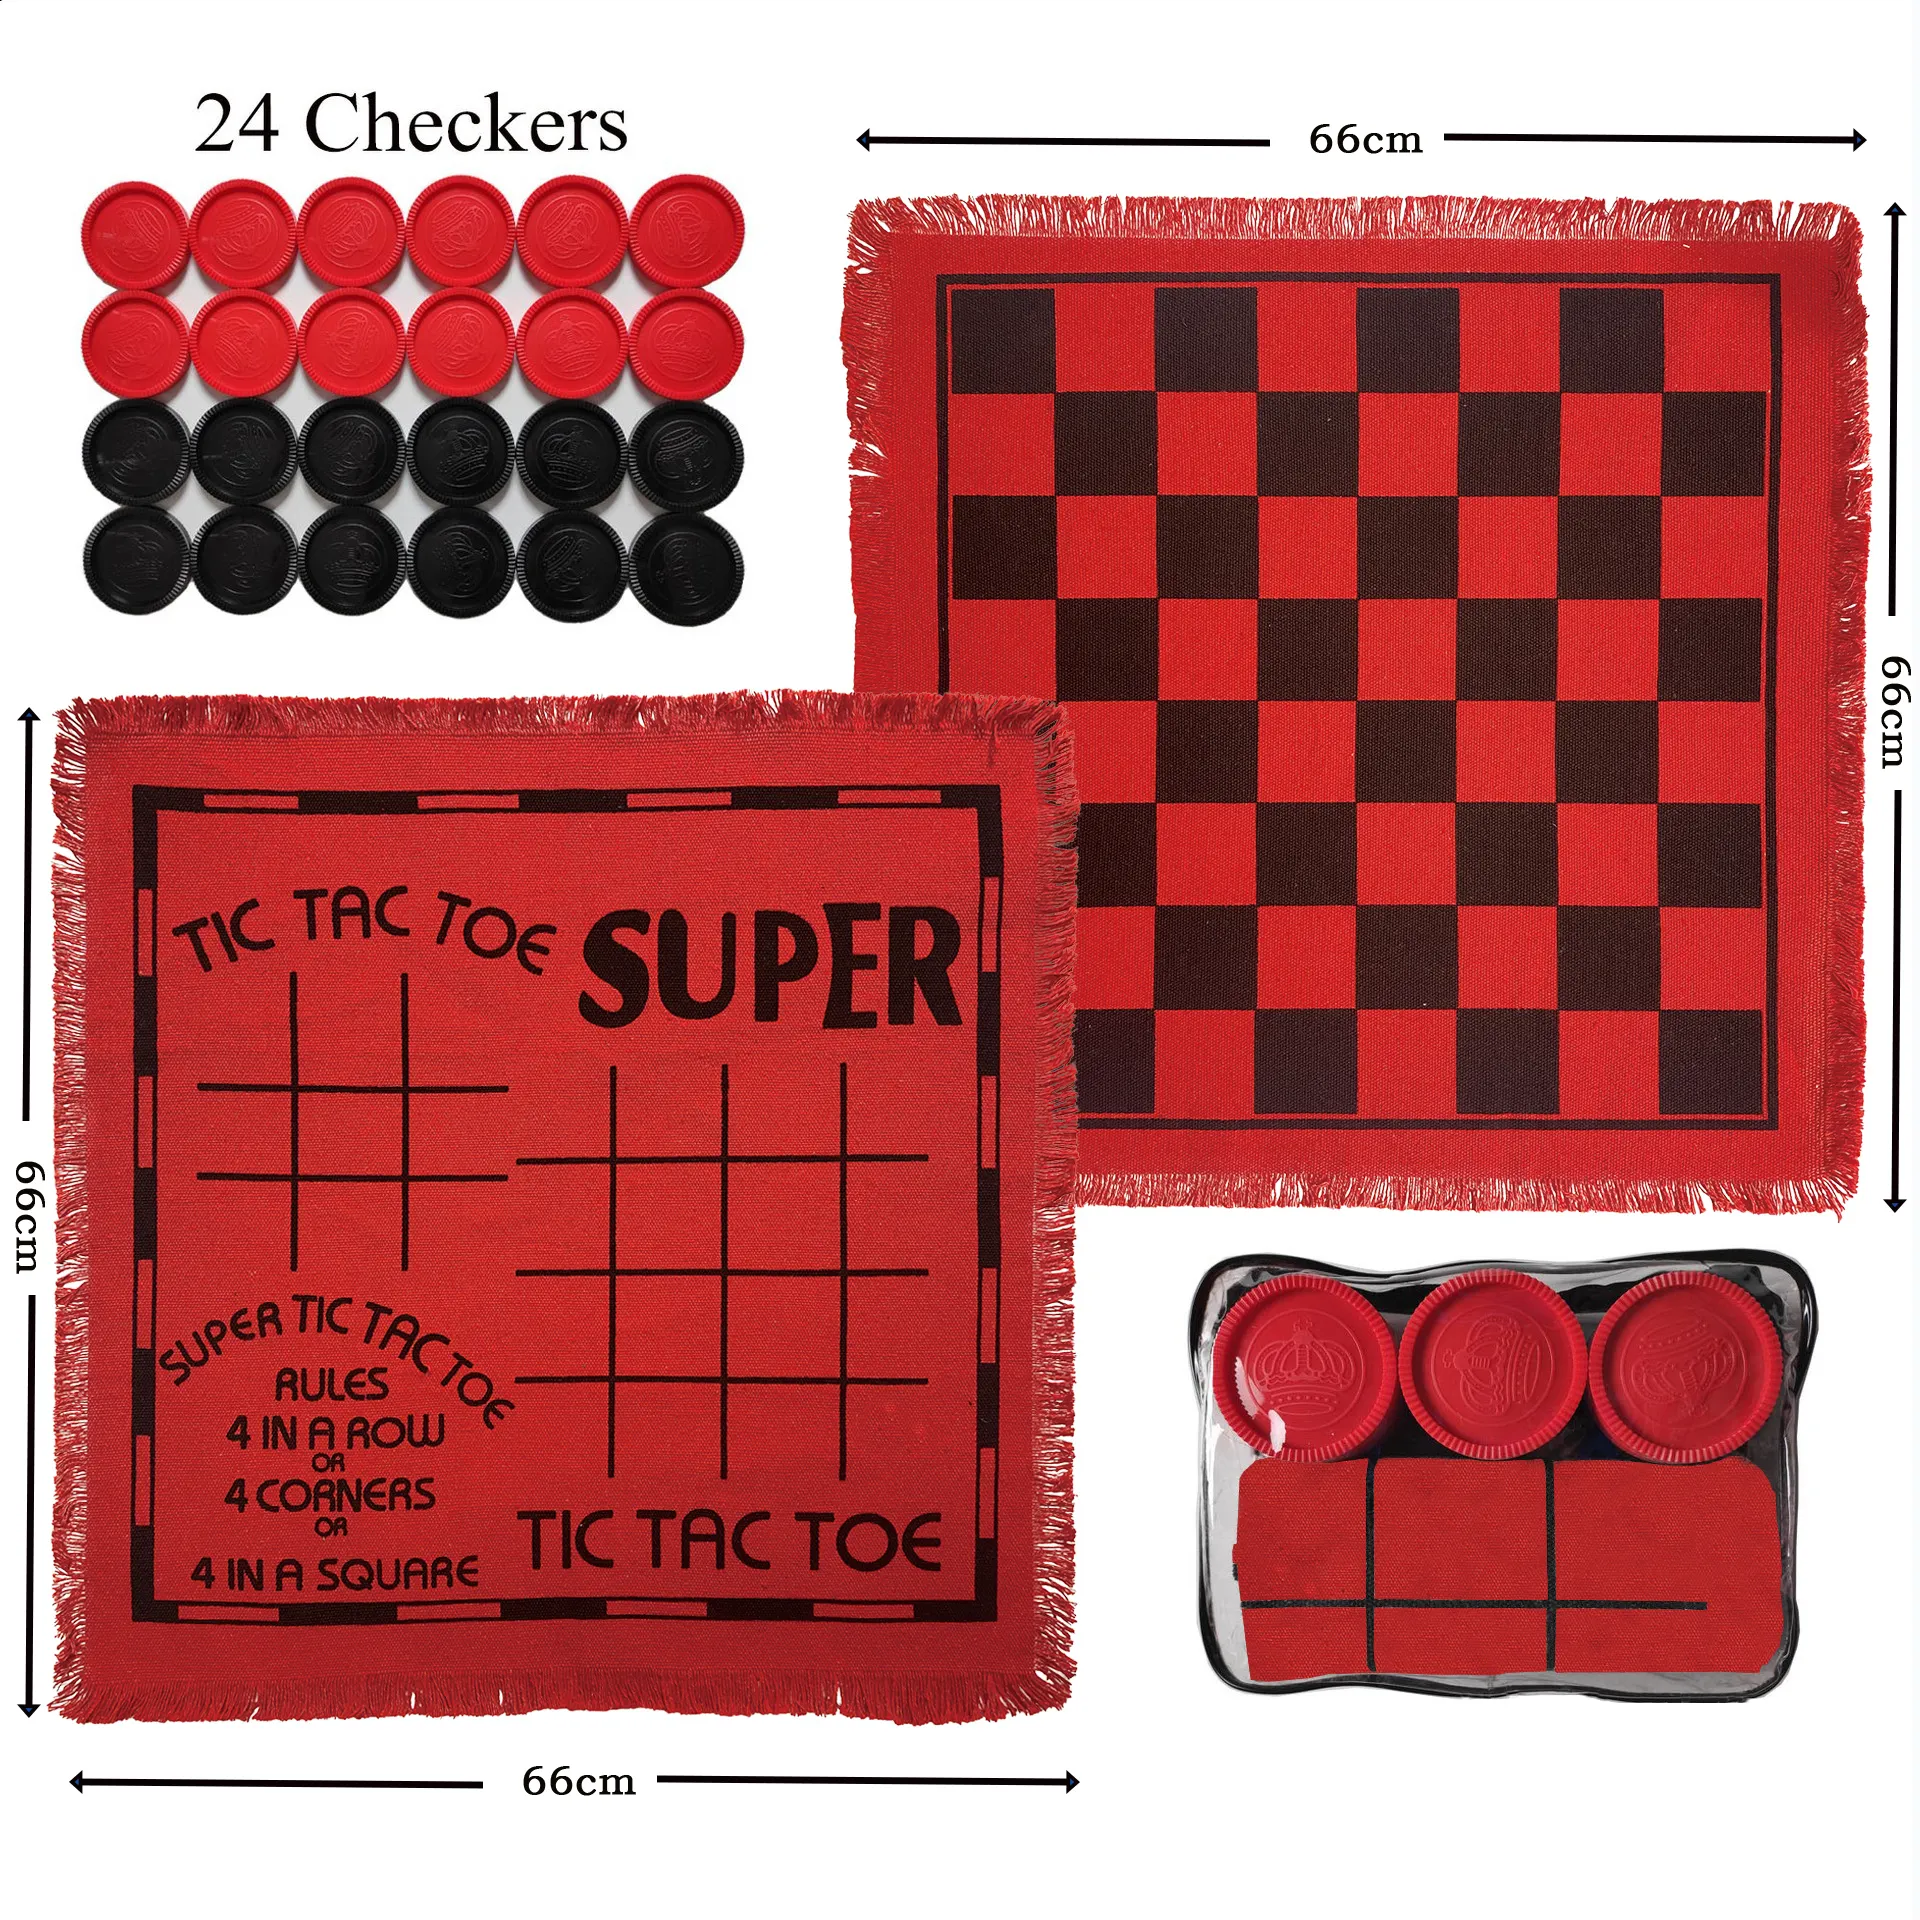 Super 3 in 1 Tic Tac Toe Scacco Set di Scacchi all'aperto e al coperto coperta a dama gioco da tavolo per bambini e adulti